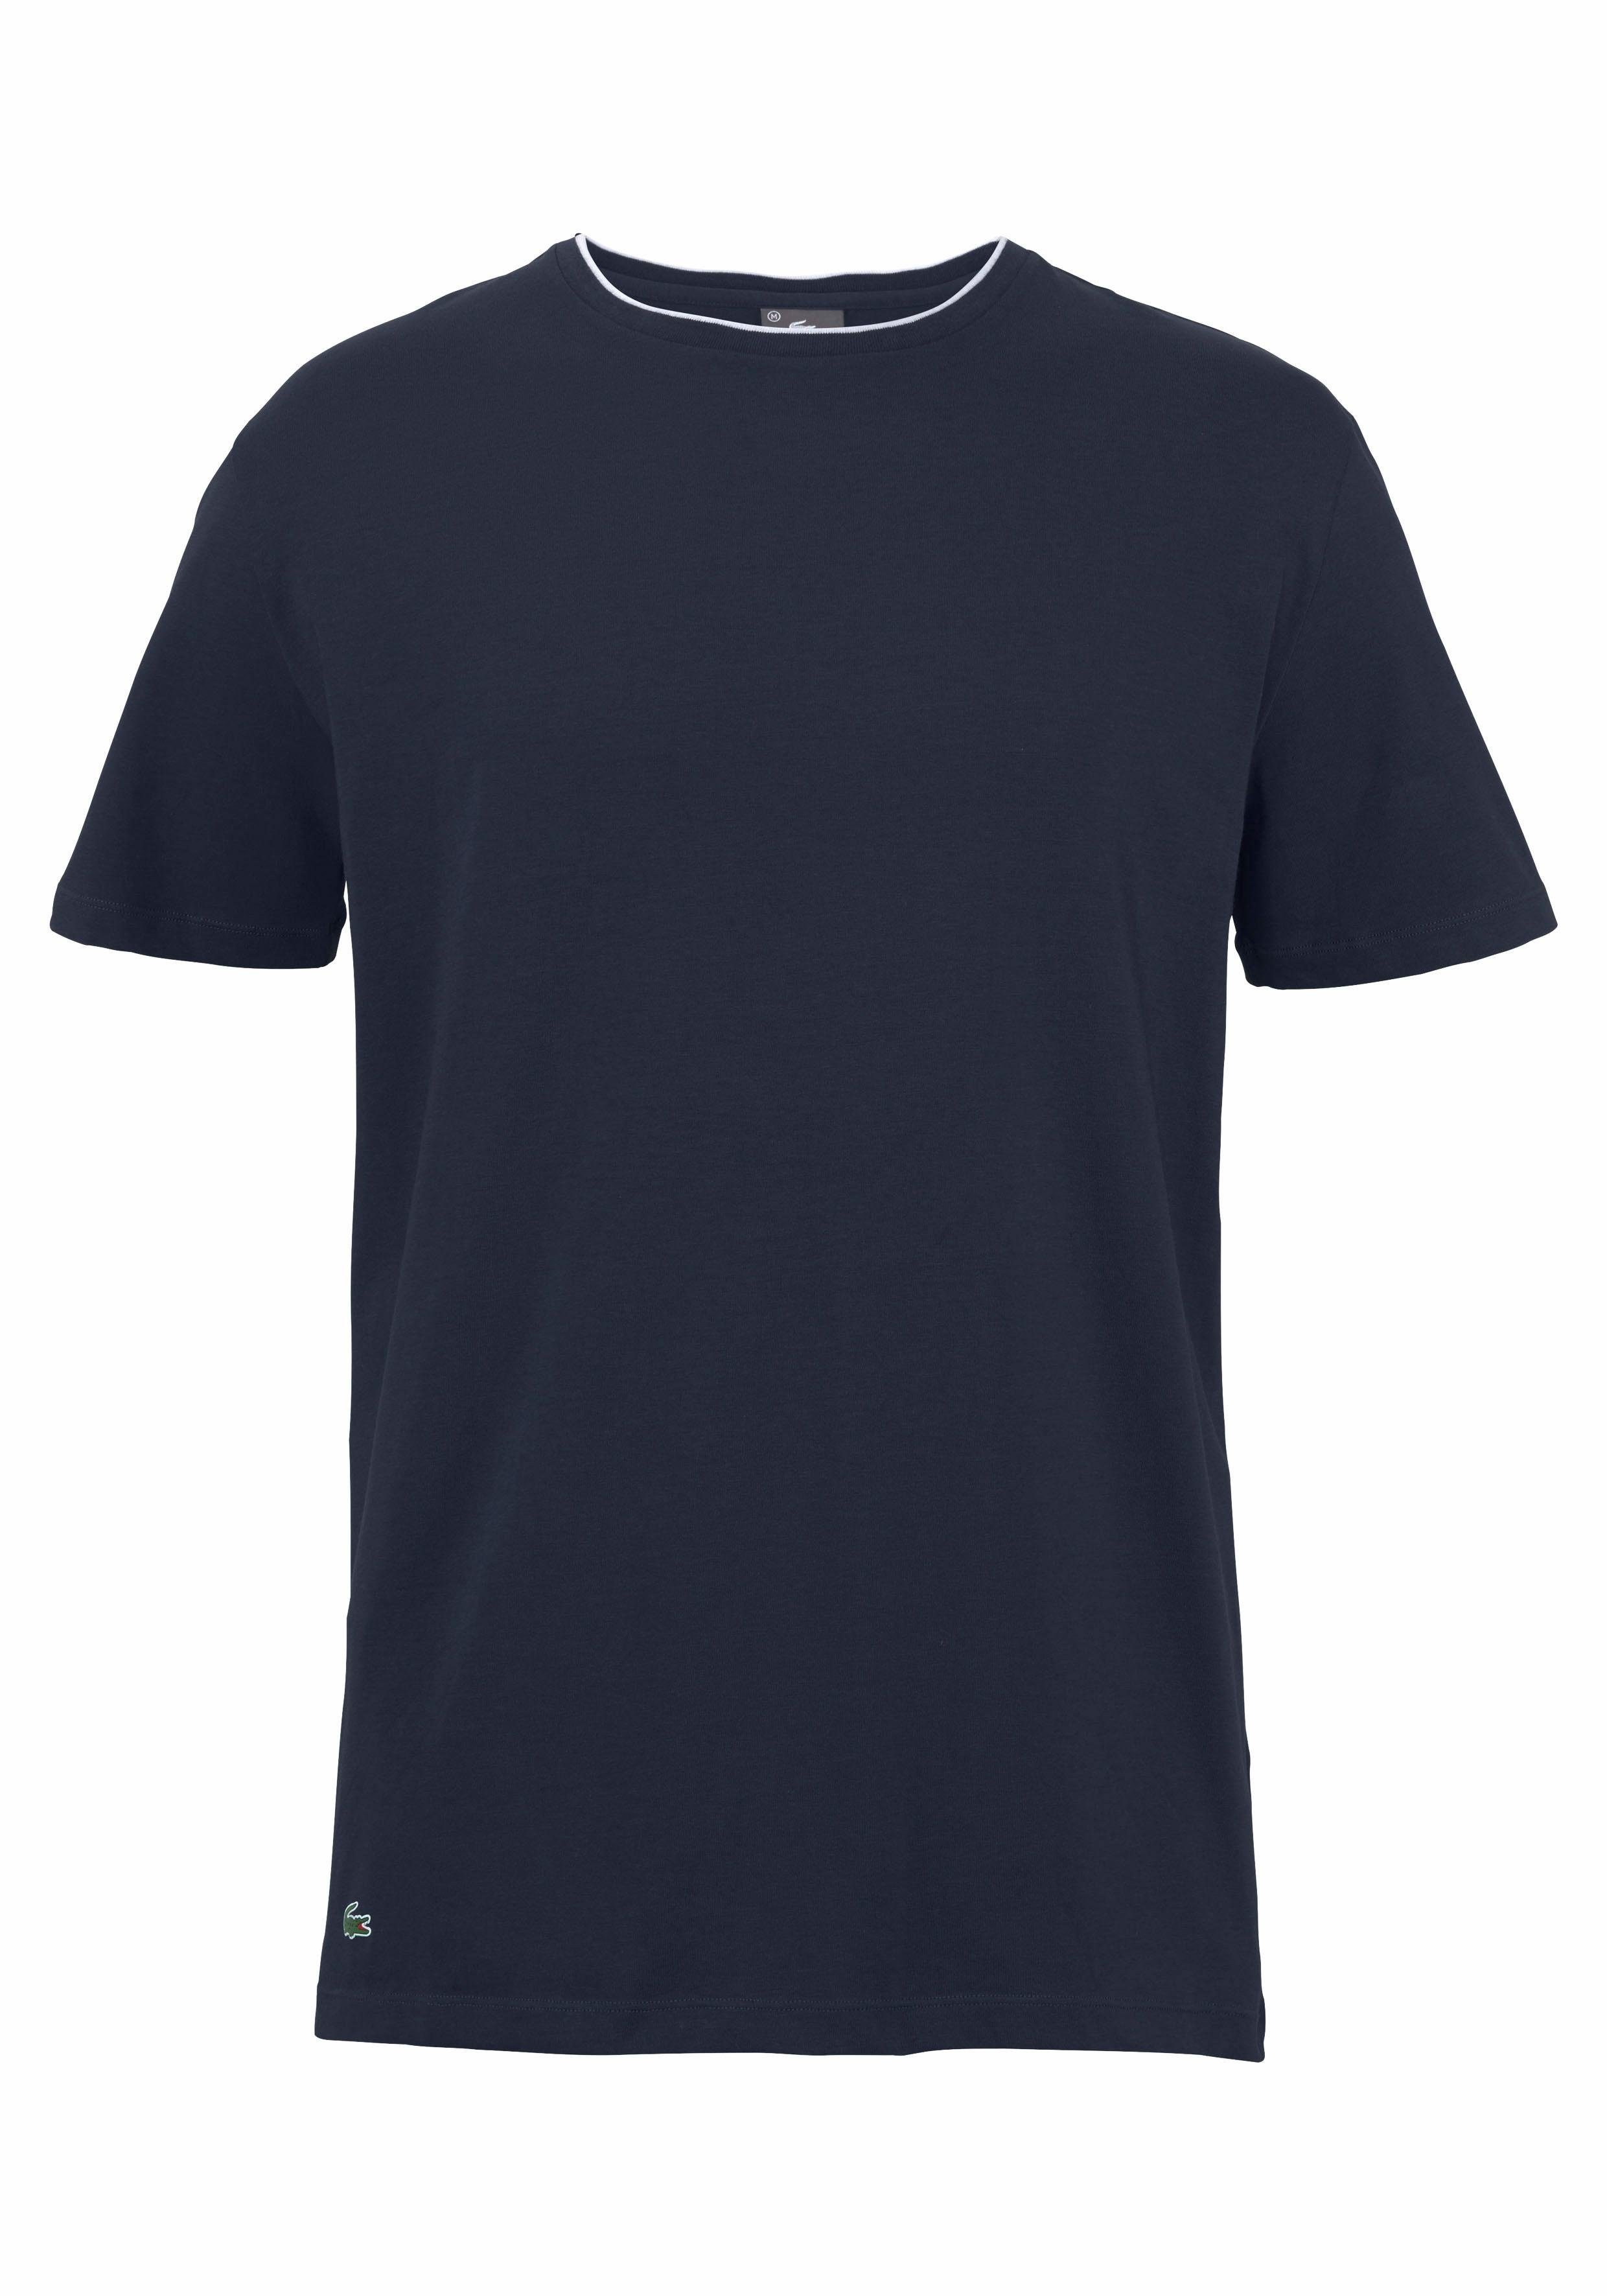 Lacoste NU 15% KORTING: Lacoste T-shirt Sleepwear